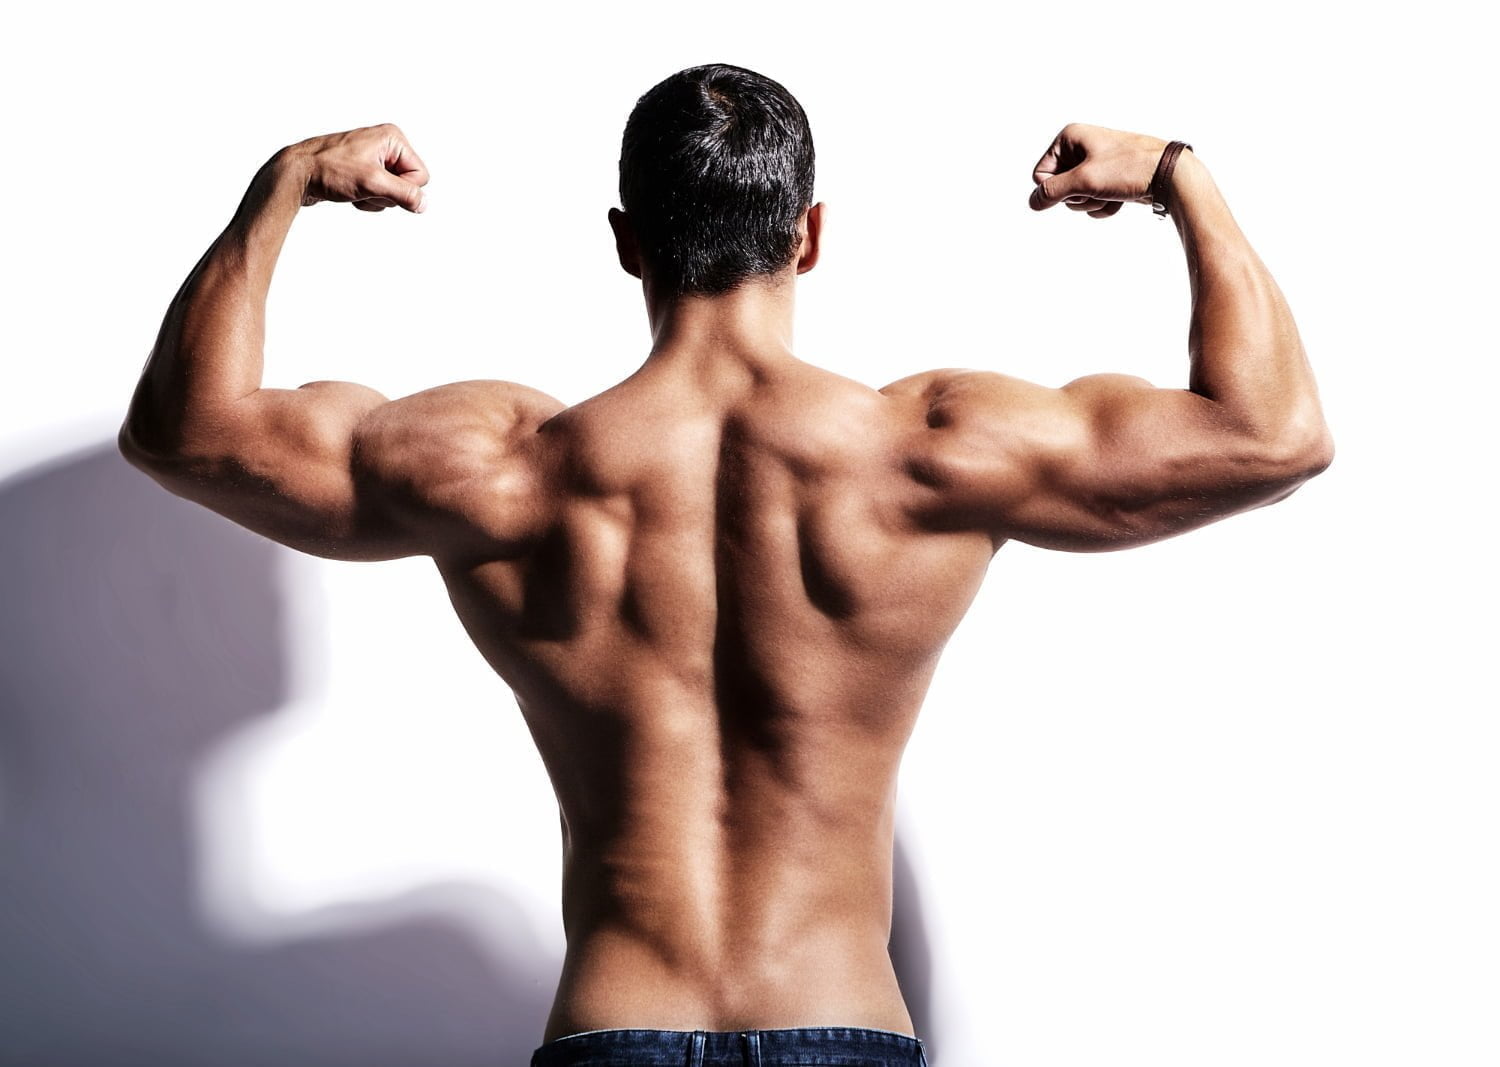 aumentar la masa muscular - Los mejores métodos para ganar masa muscular